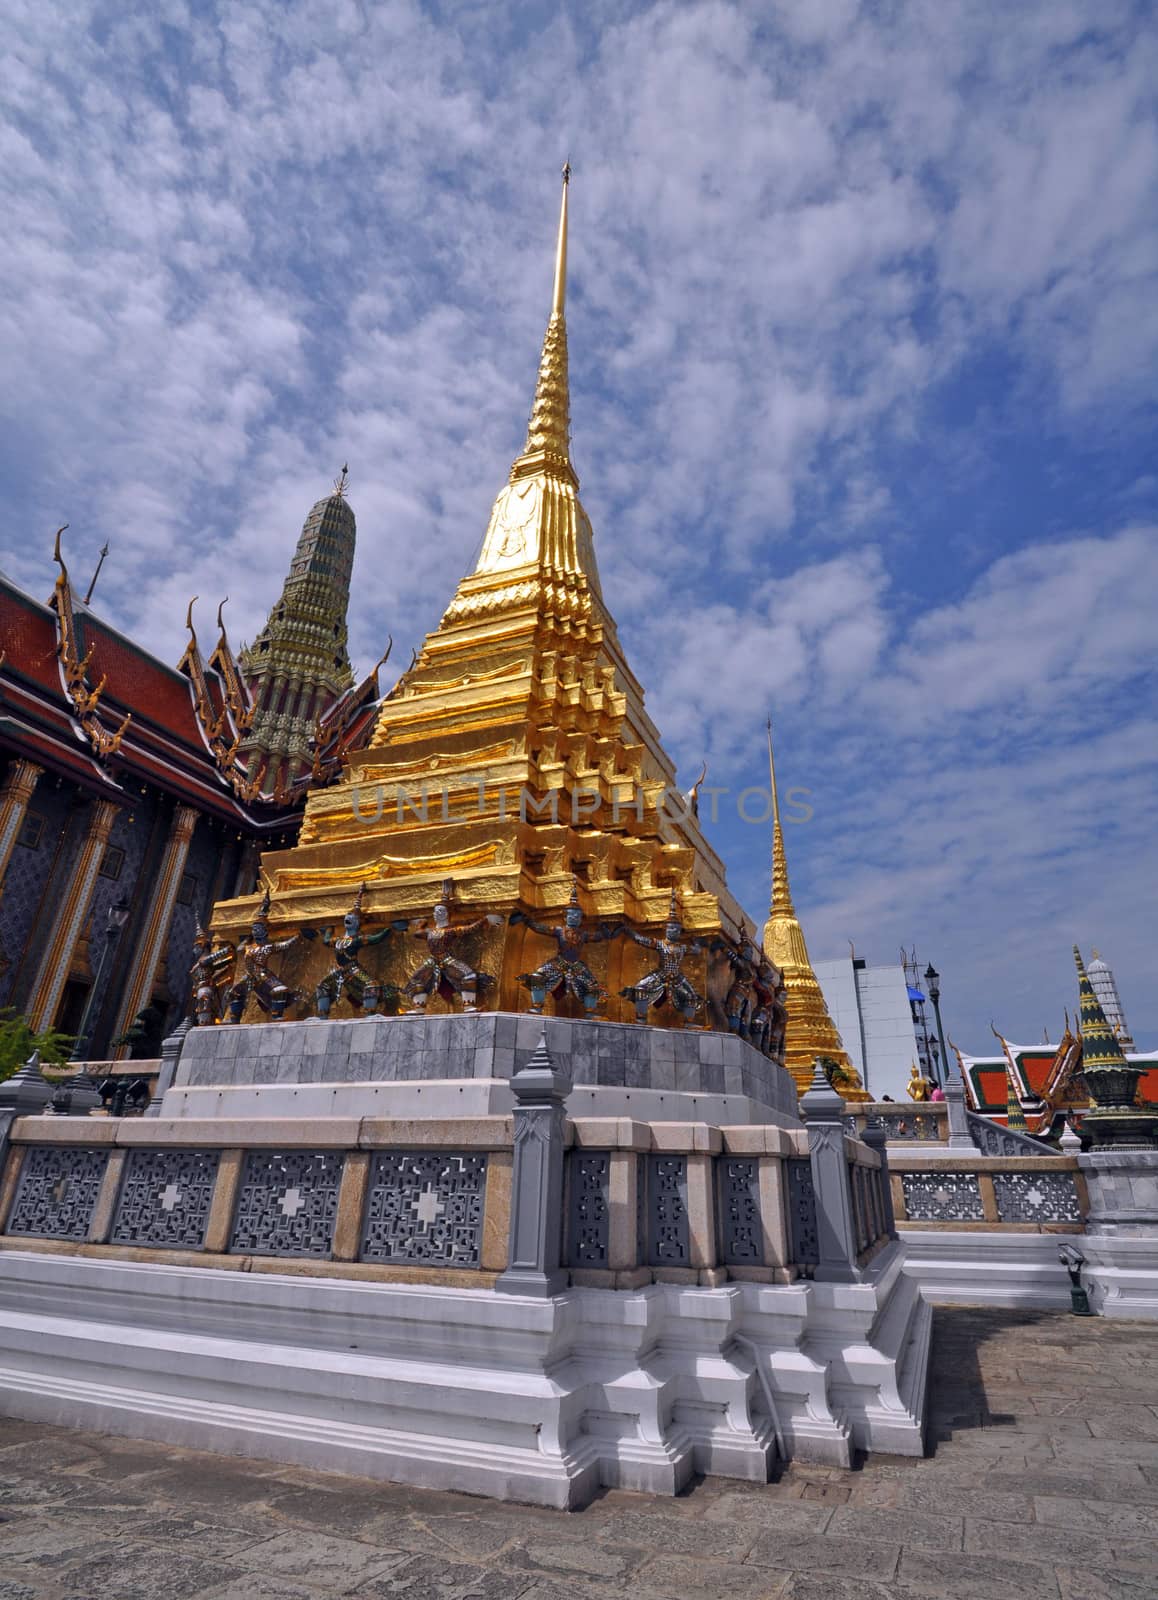 Grand Palace architecture Bangkok by dpe123